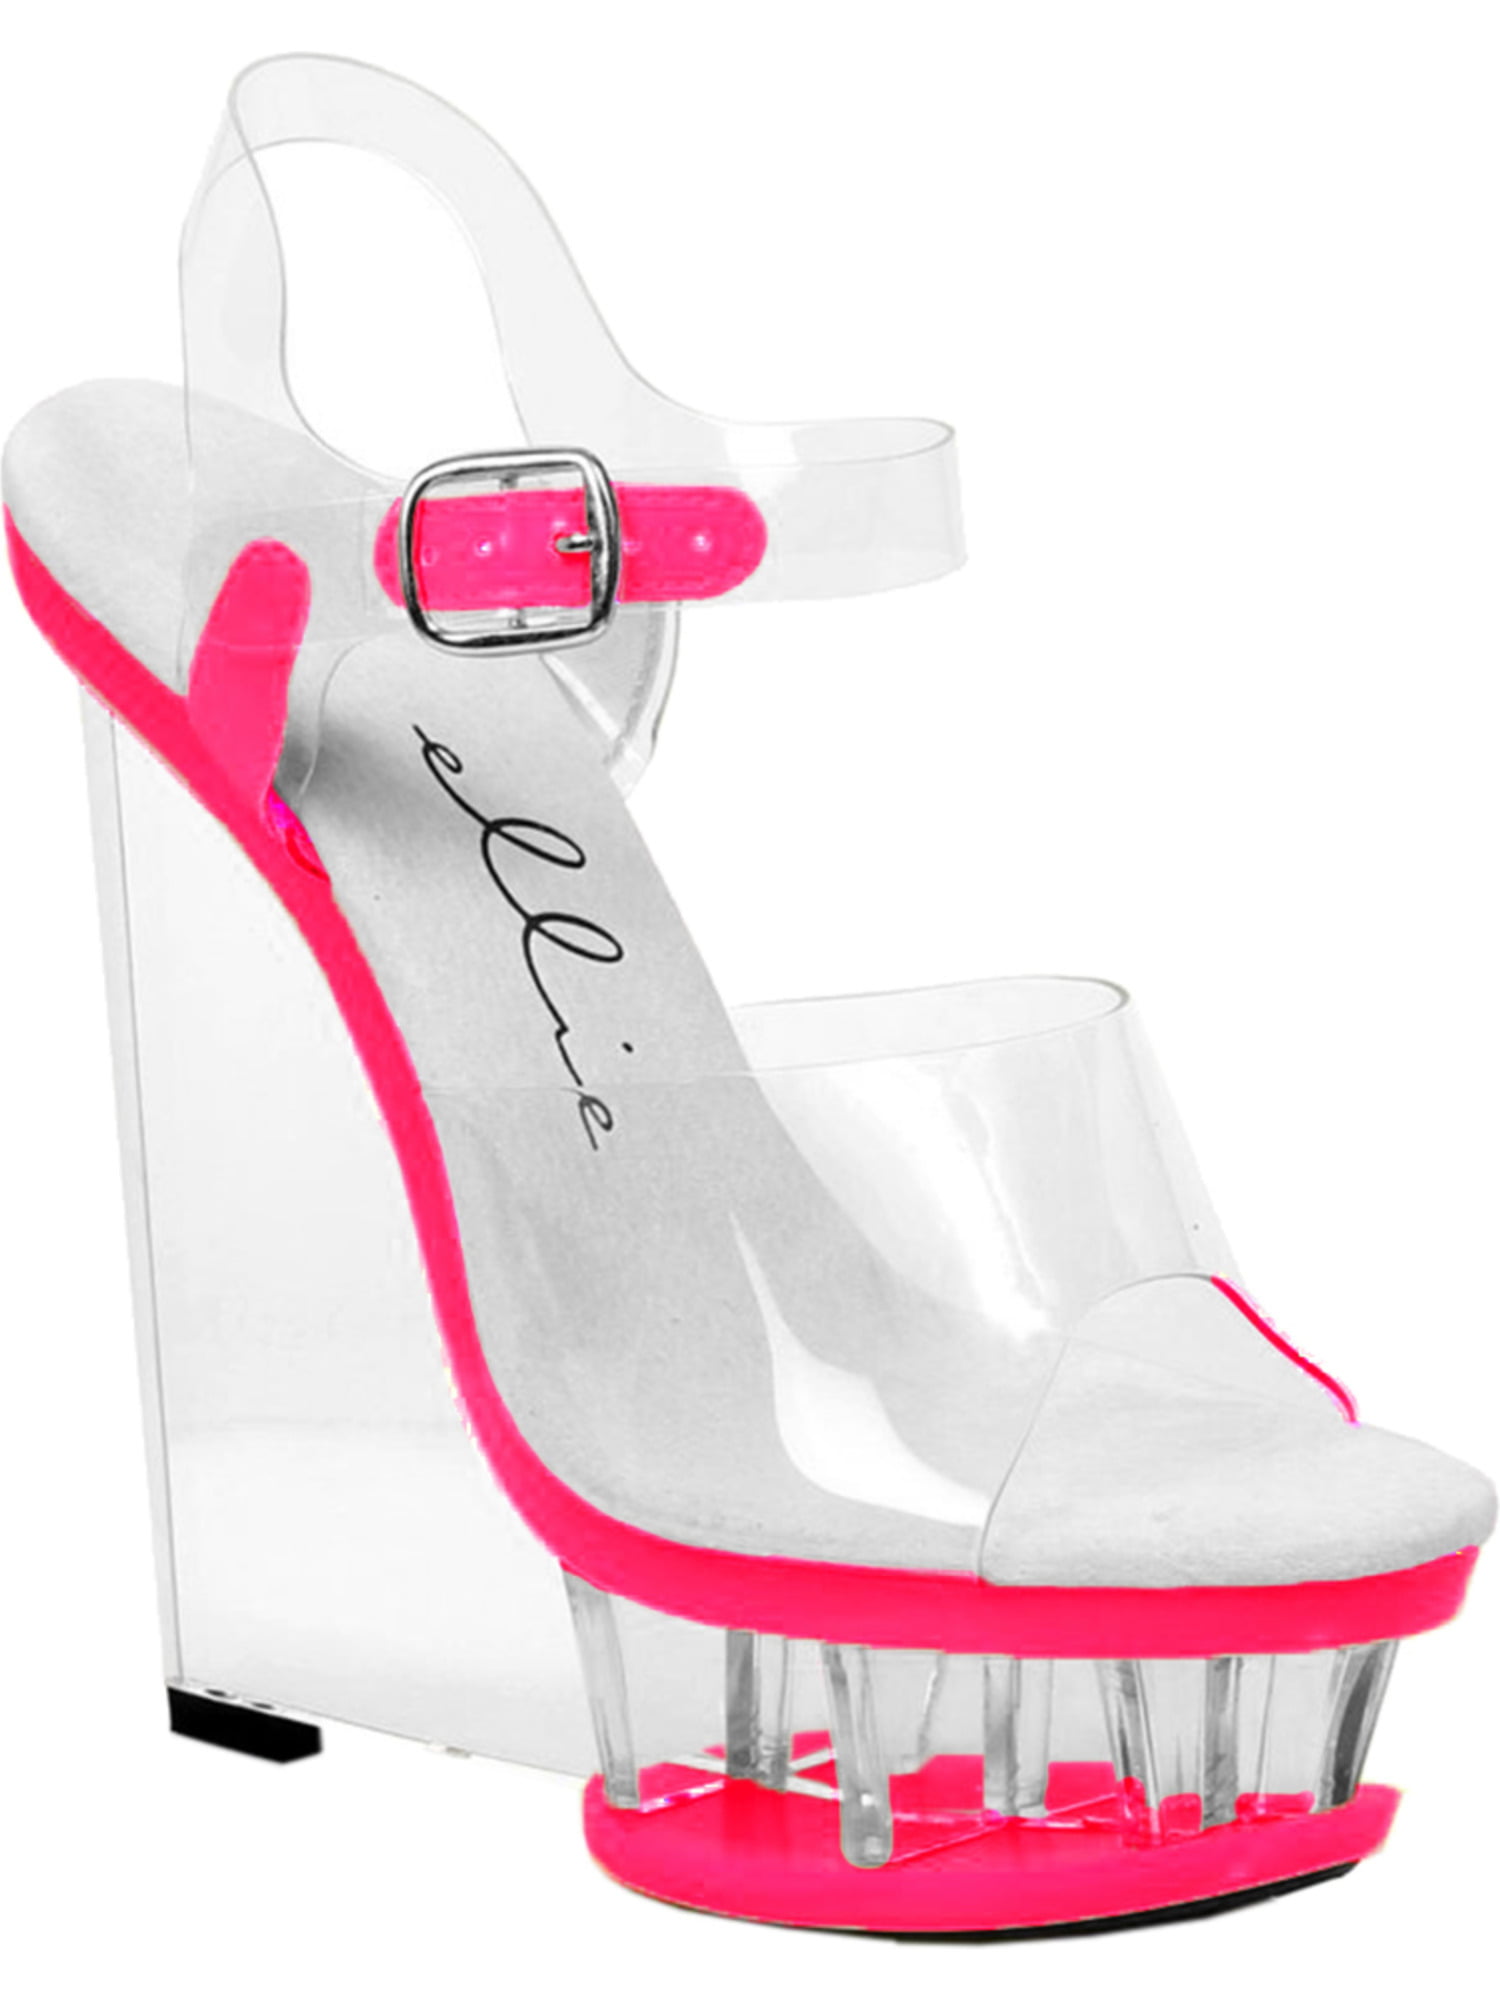 neon pink clear heels